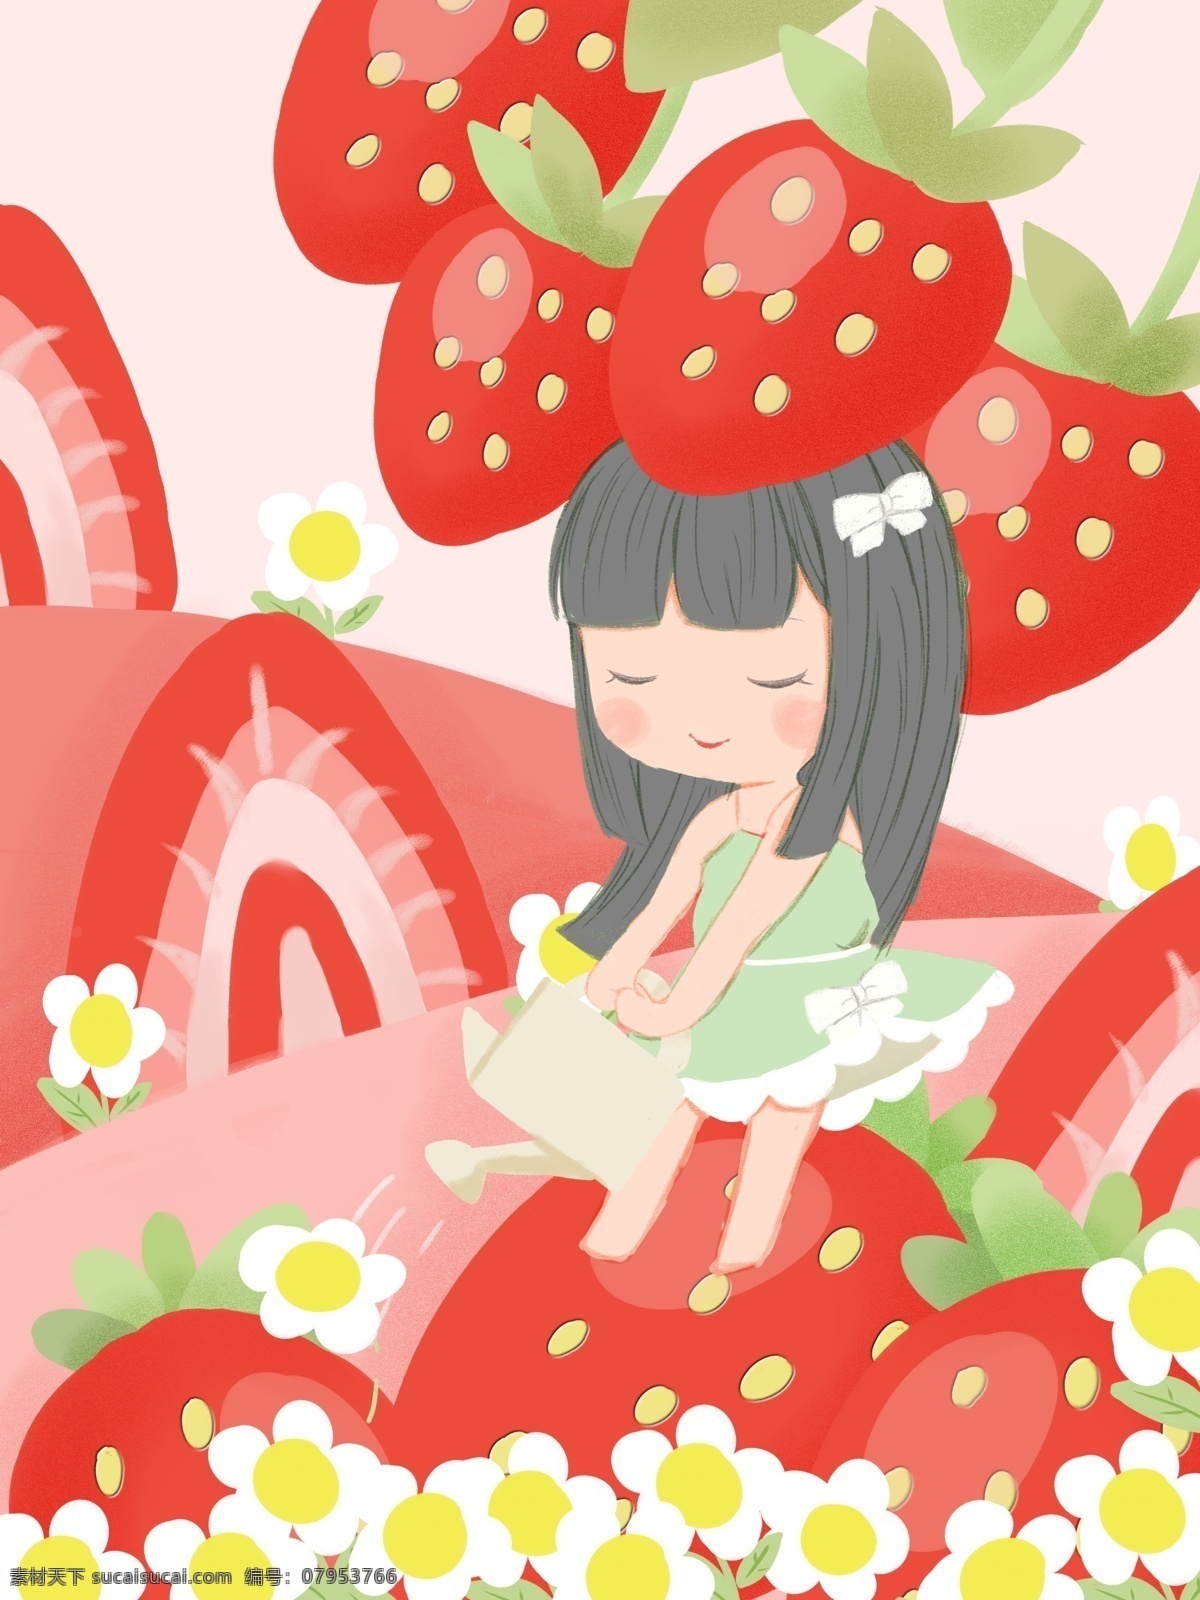 原创 少女 心 插画 草莓 田里 浇水 女孩 红色 创意 水果 水壶 花 少女心